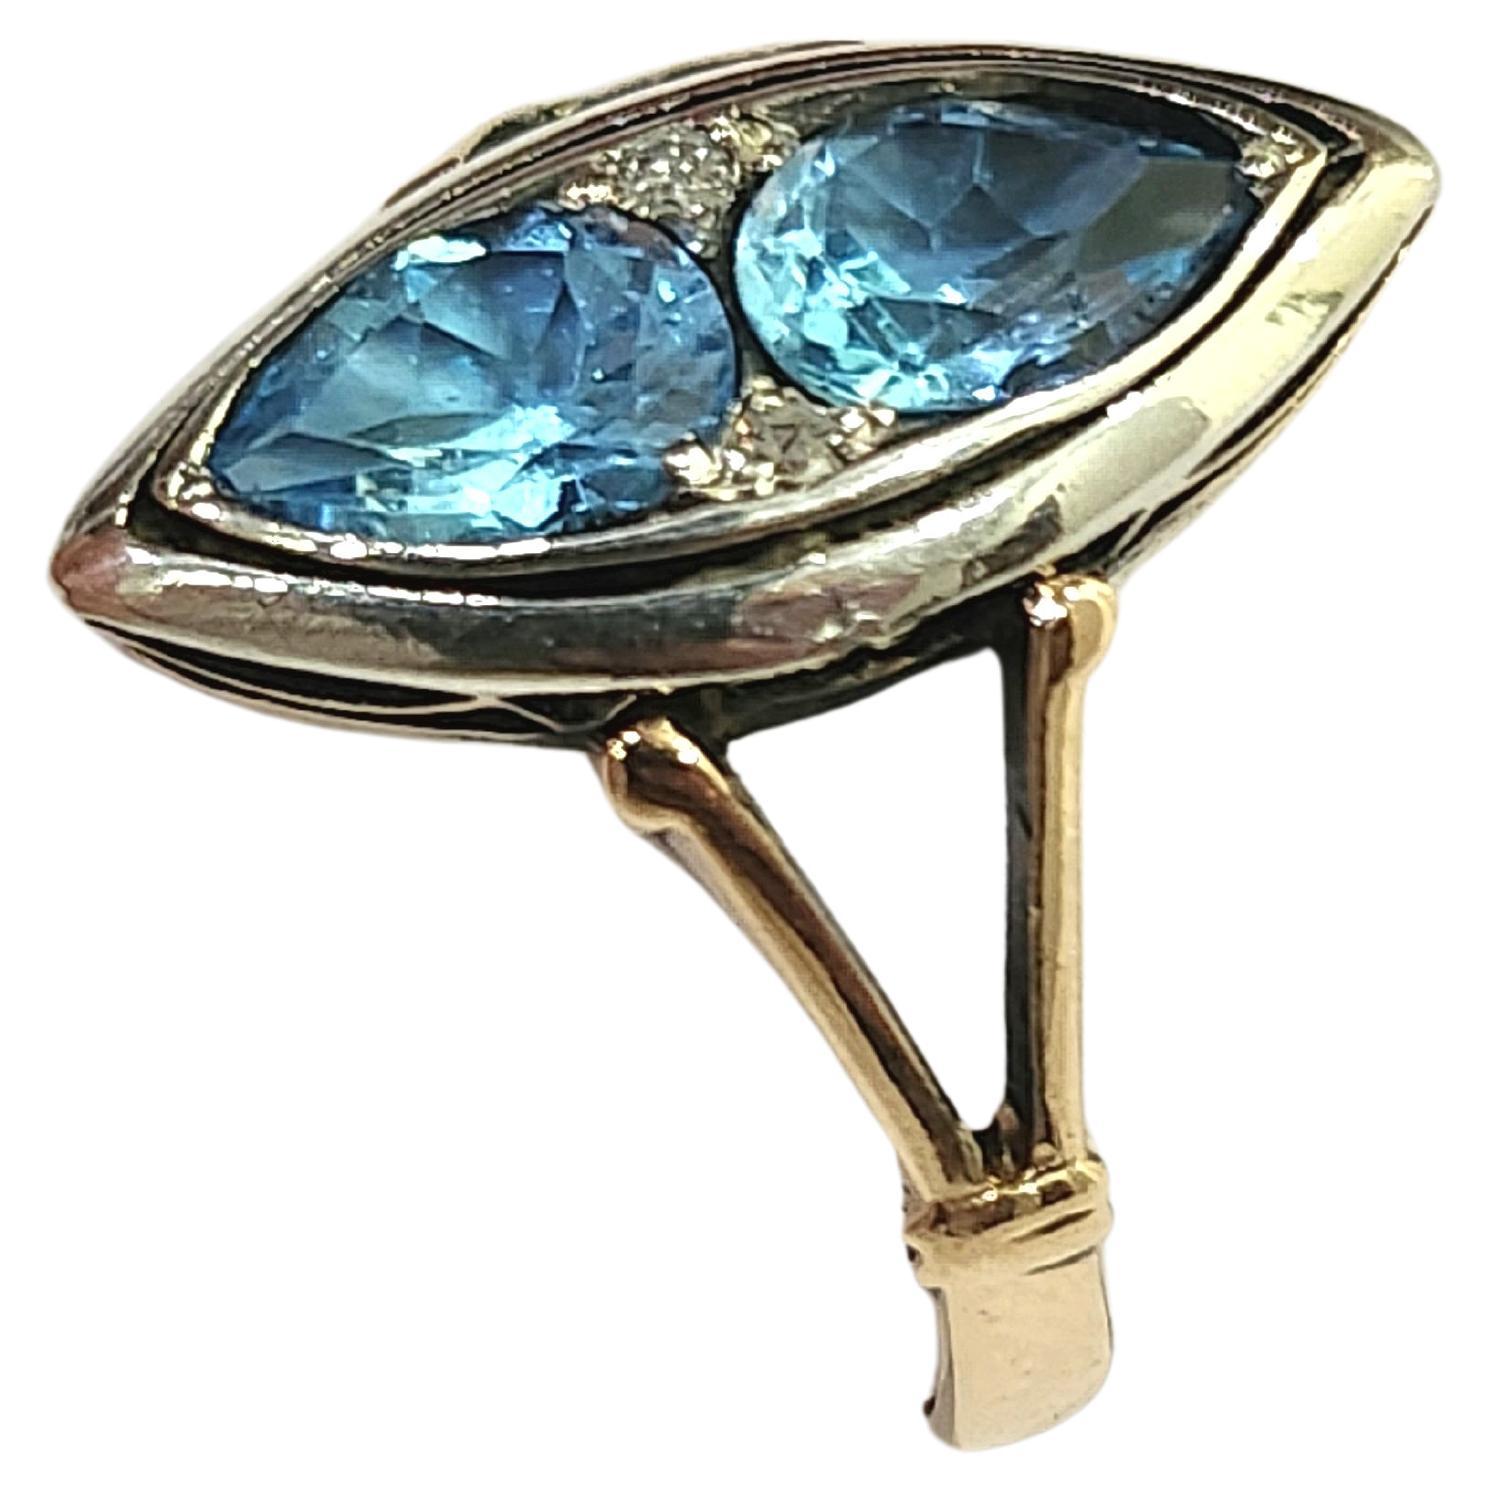 Antike Artdeco-Ära Ring mit 2 blauen Topas Steine in Birne geschnitten Form flankiert mit kleinen Diamanten in 14k Gold Einstellung mit Silber gekrönt stammt aus den 1930er Jahren